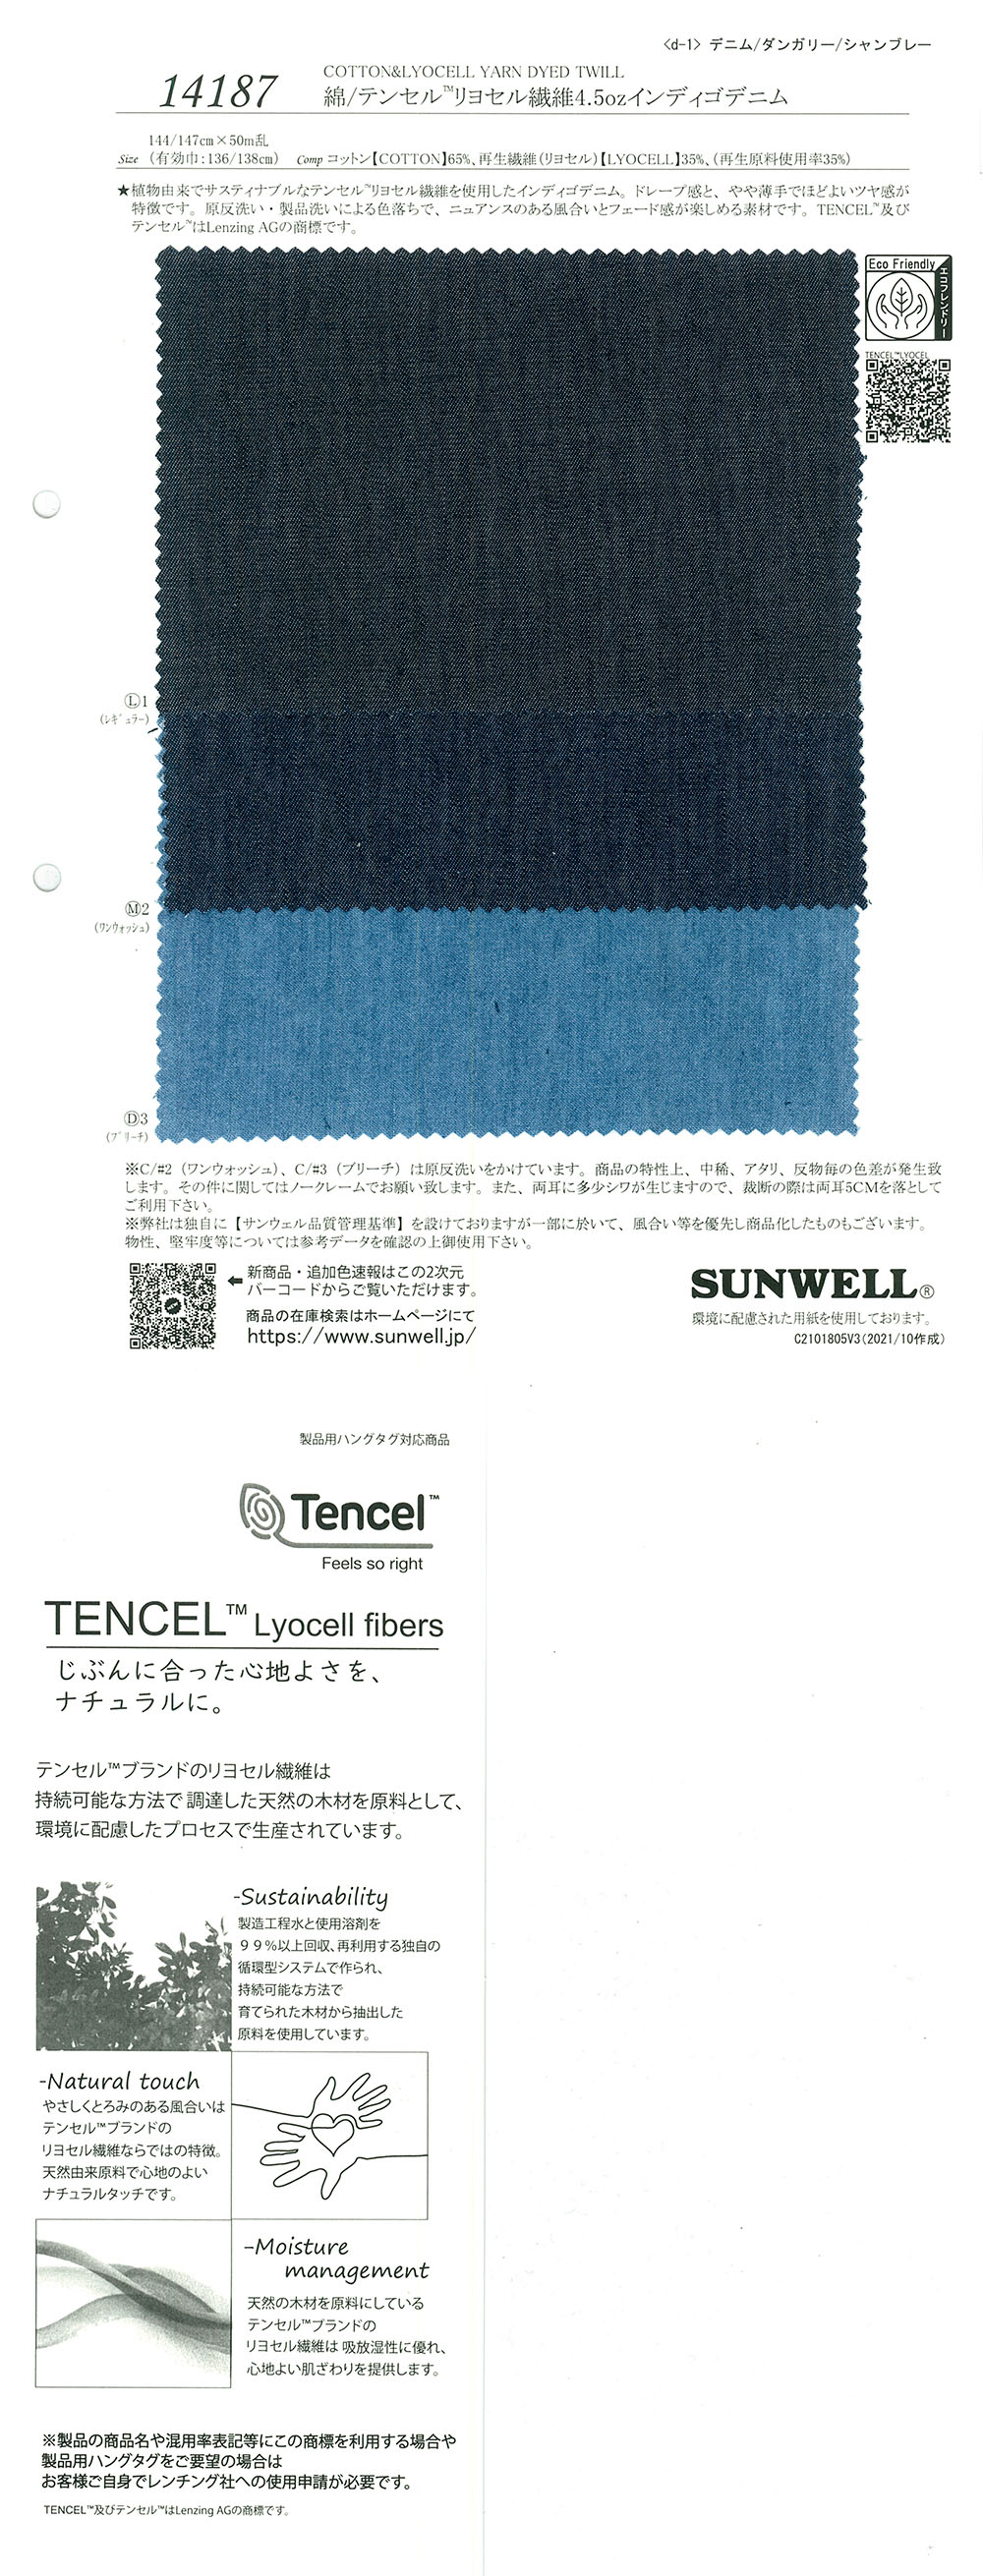 14187 綿/テンセル(TM)リヨセル繊維4.5ozインディゴデニム[生地] SUNWELL(サンウェル)